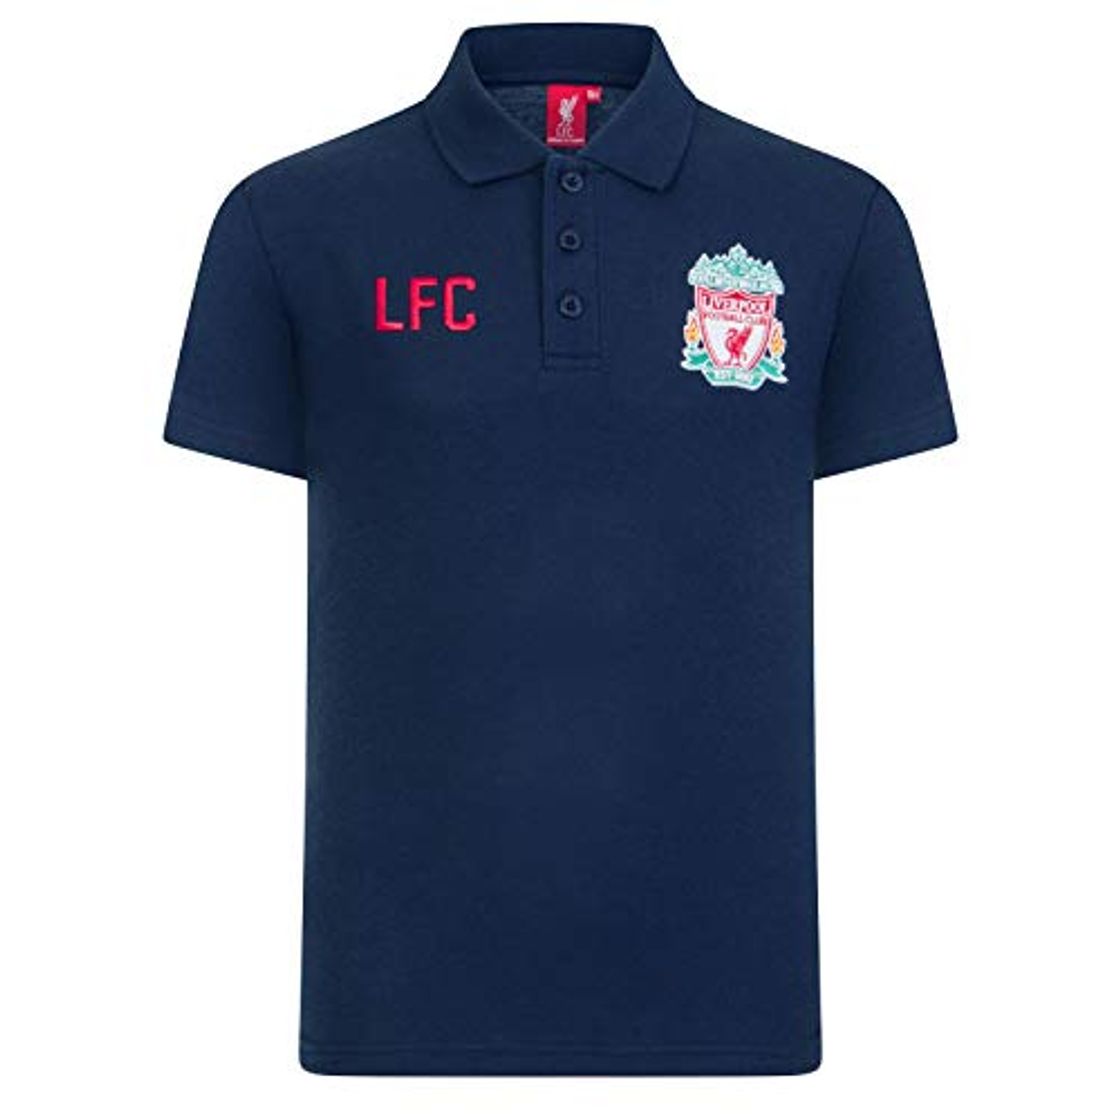 Polo oficial del equipo británico Liverpool F.C. con escudo